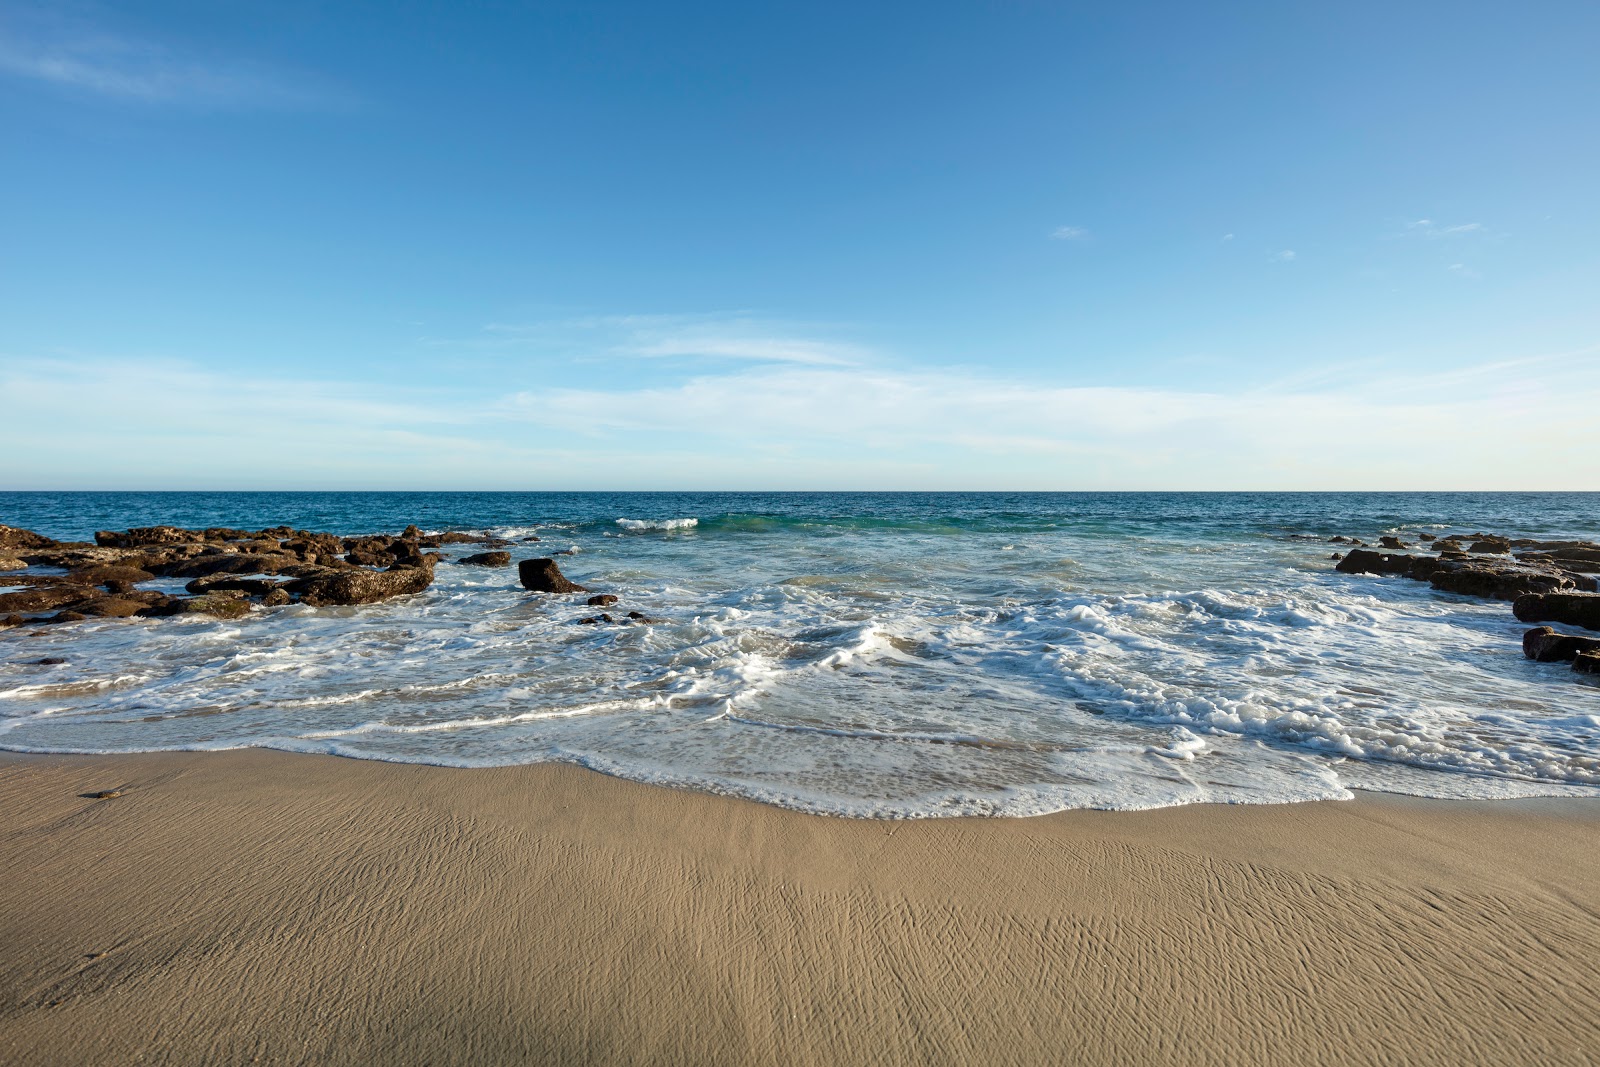 Zdjęcie East Cape Beach - popularne miejsce wśród znawców relaksu